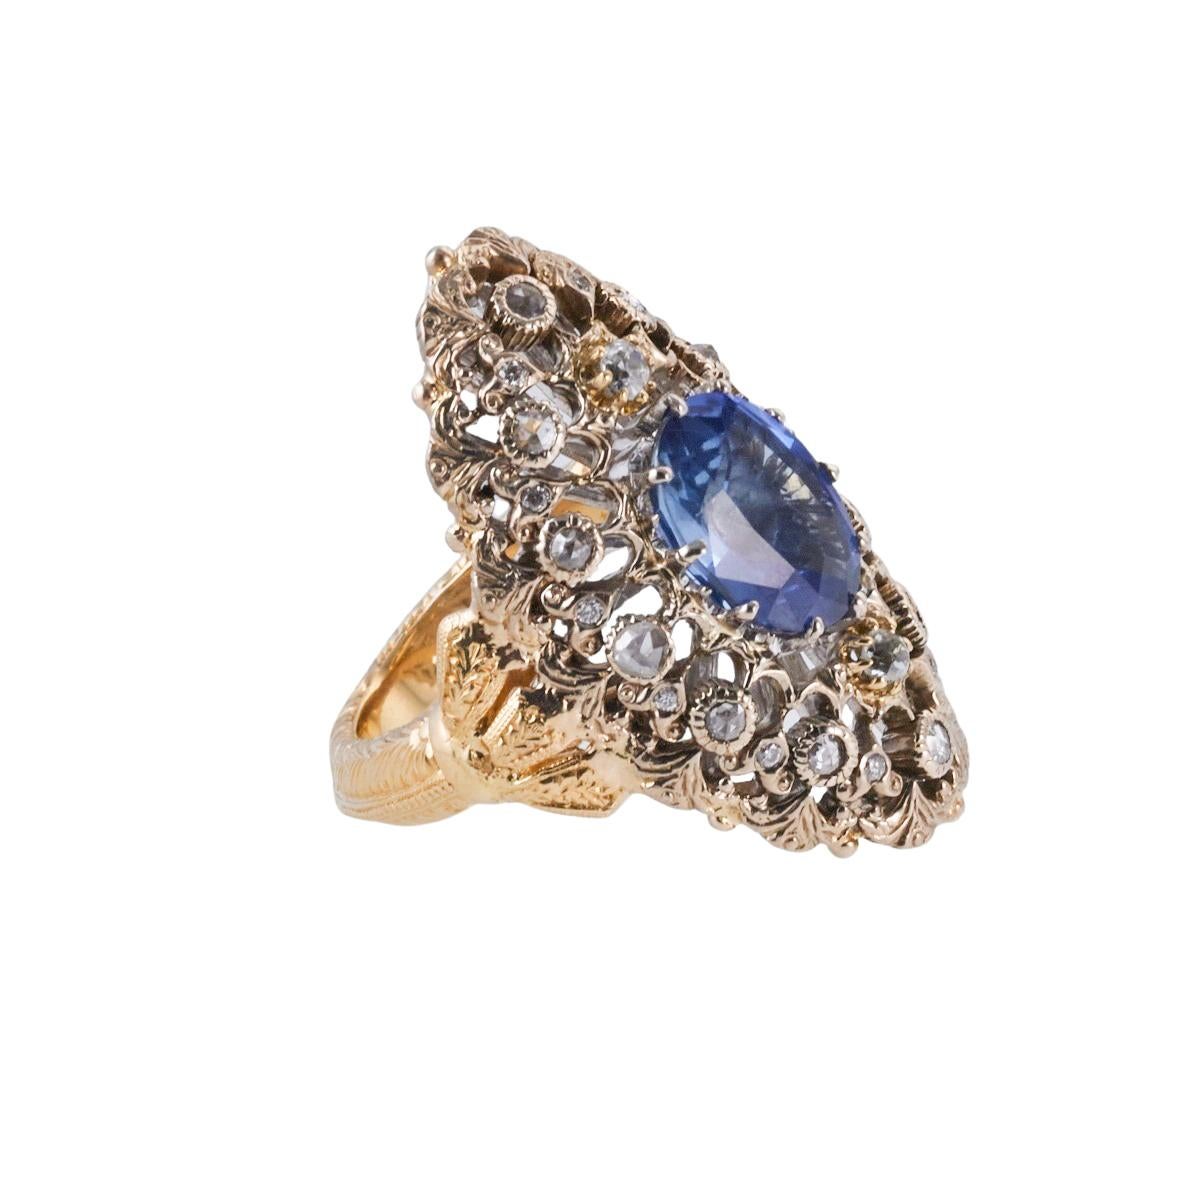 Ring aus 18 Karat Weiß- und Gelbgold von Mario Buccellati, besetzt mit einem ovalen blauen Saphir in der Mitte (Maße ca. 11 x 8,7 mm, wie es die Fassung zulässt), umgeben von ca. 0,40 ct in Diamanten. Ringgröße 5,25, Oberteil 33mm x 20mm. Gezeichnet